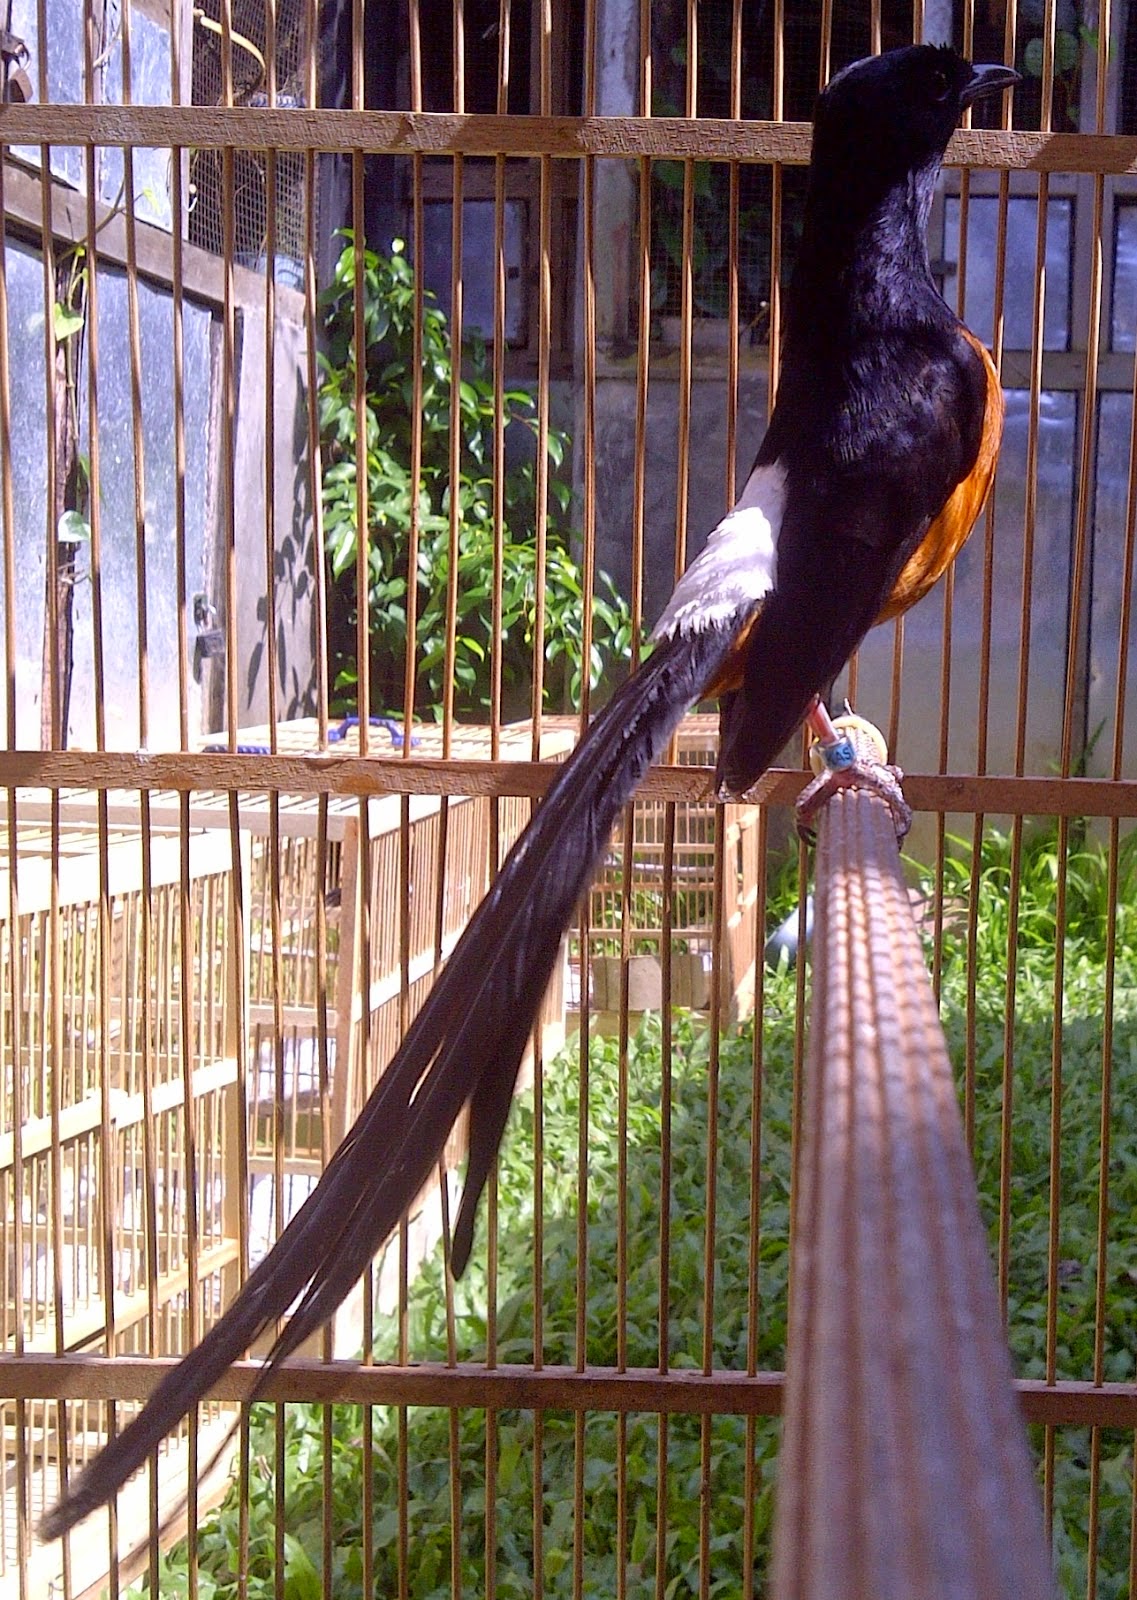 Wisata Kicau Bird Farm: Jenis Murai Batu